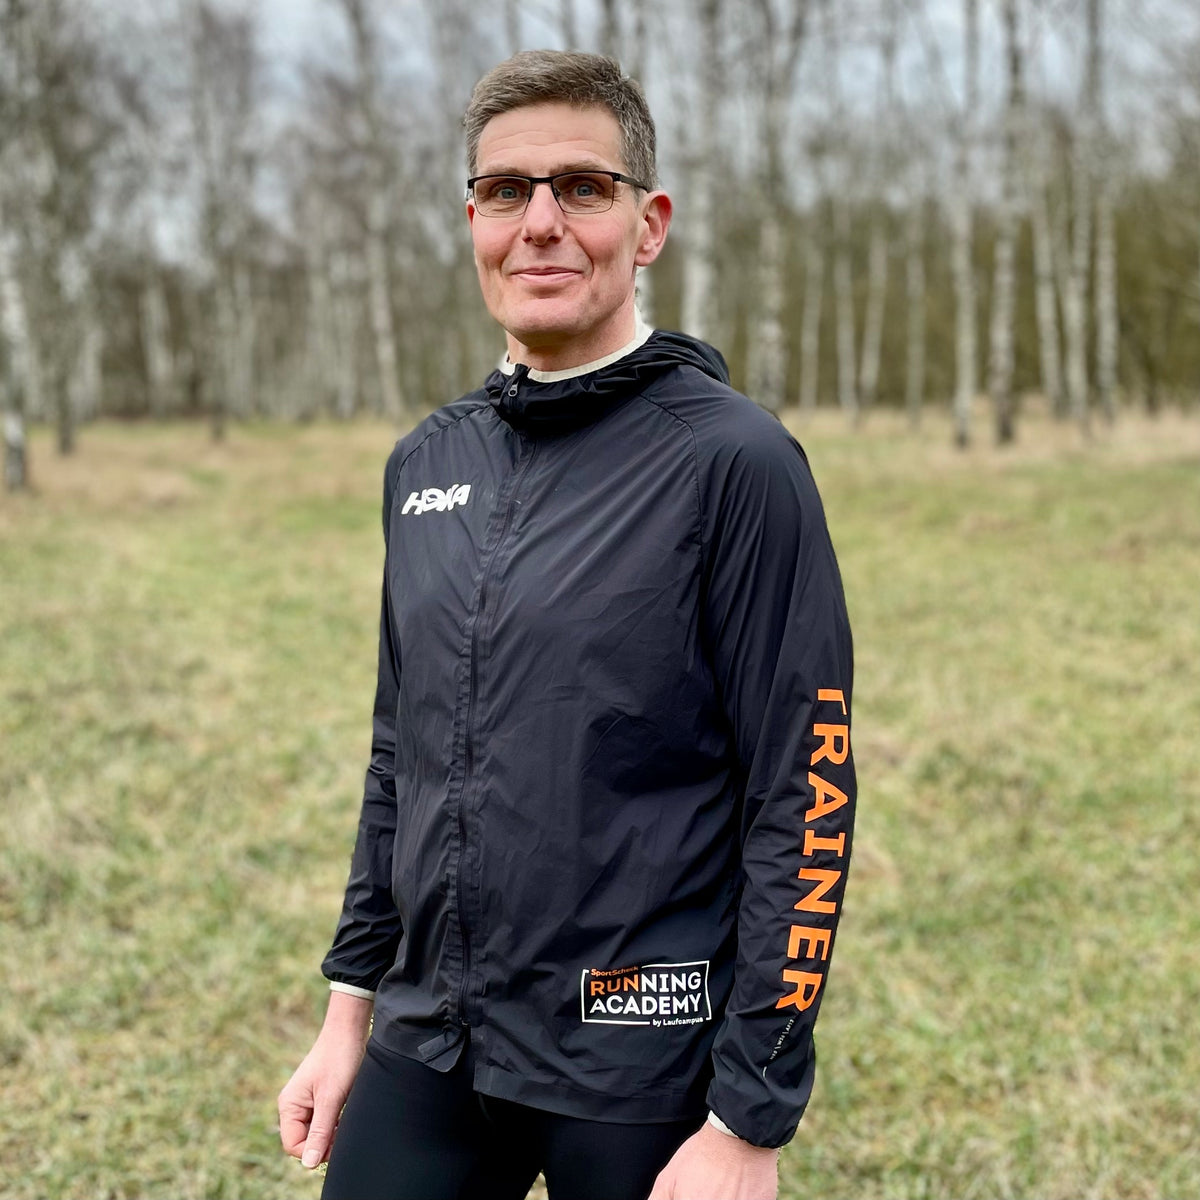 Andreas Nargosen – Lauftrainer | Laufcampus Trainer